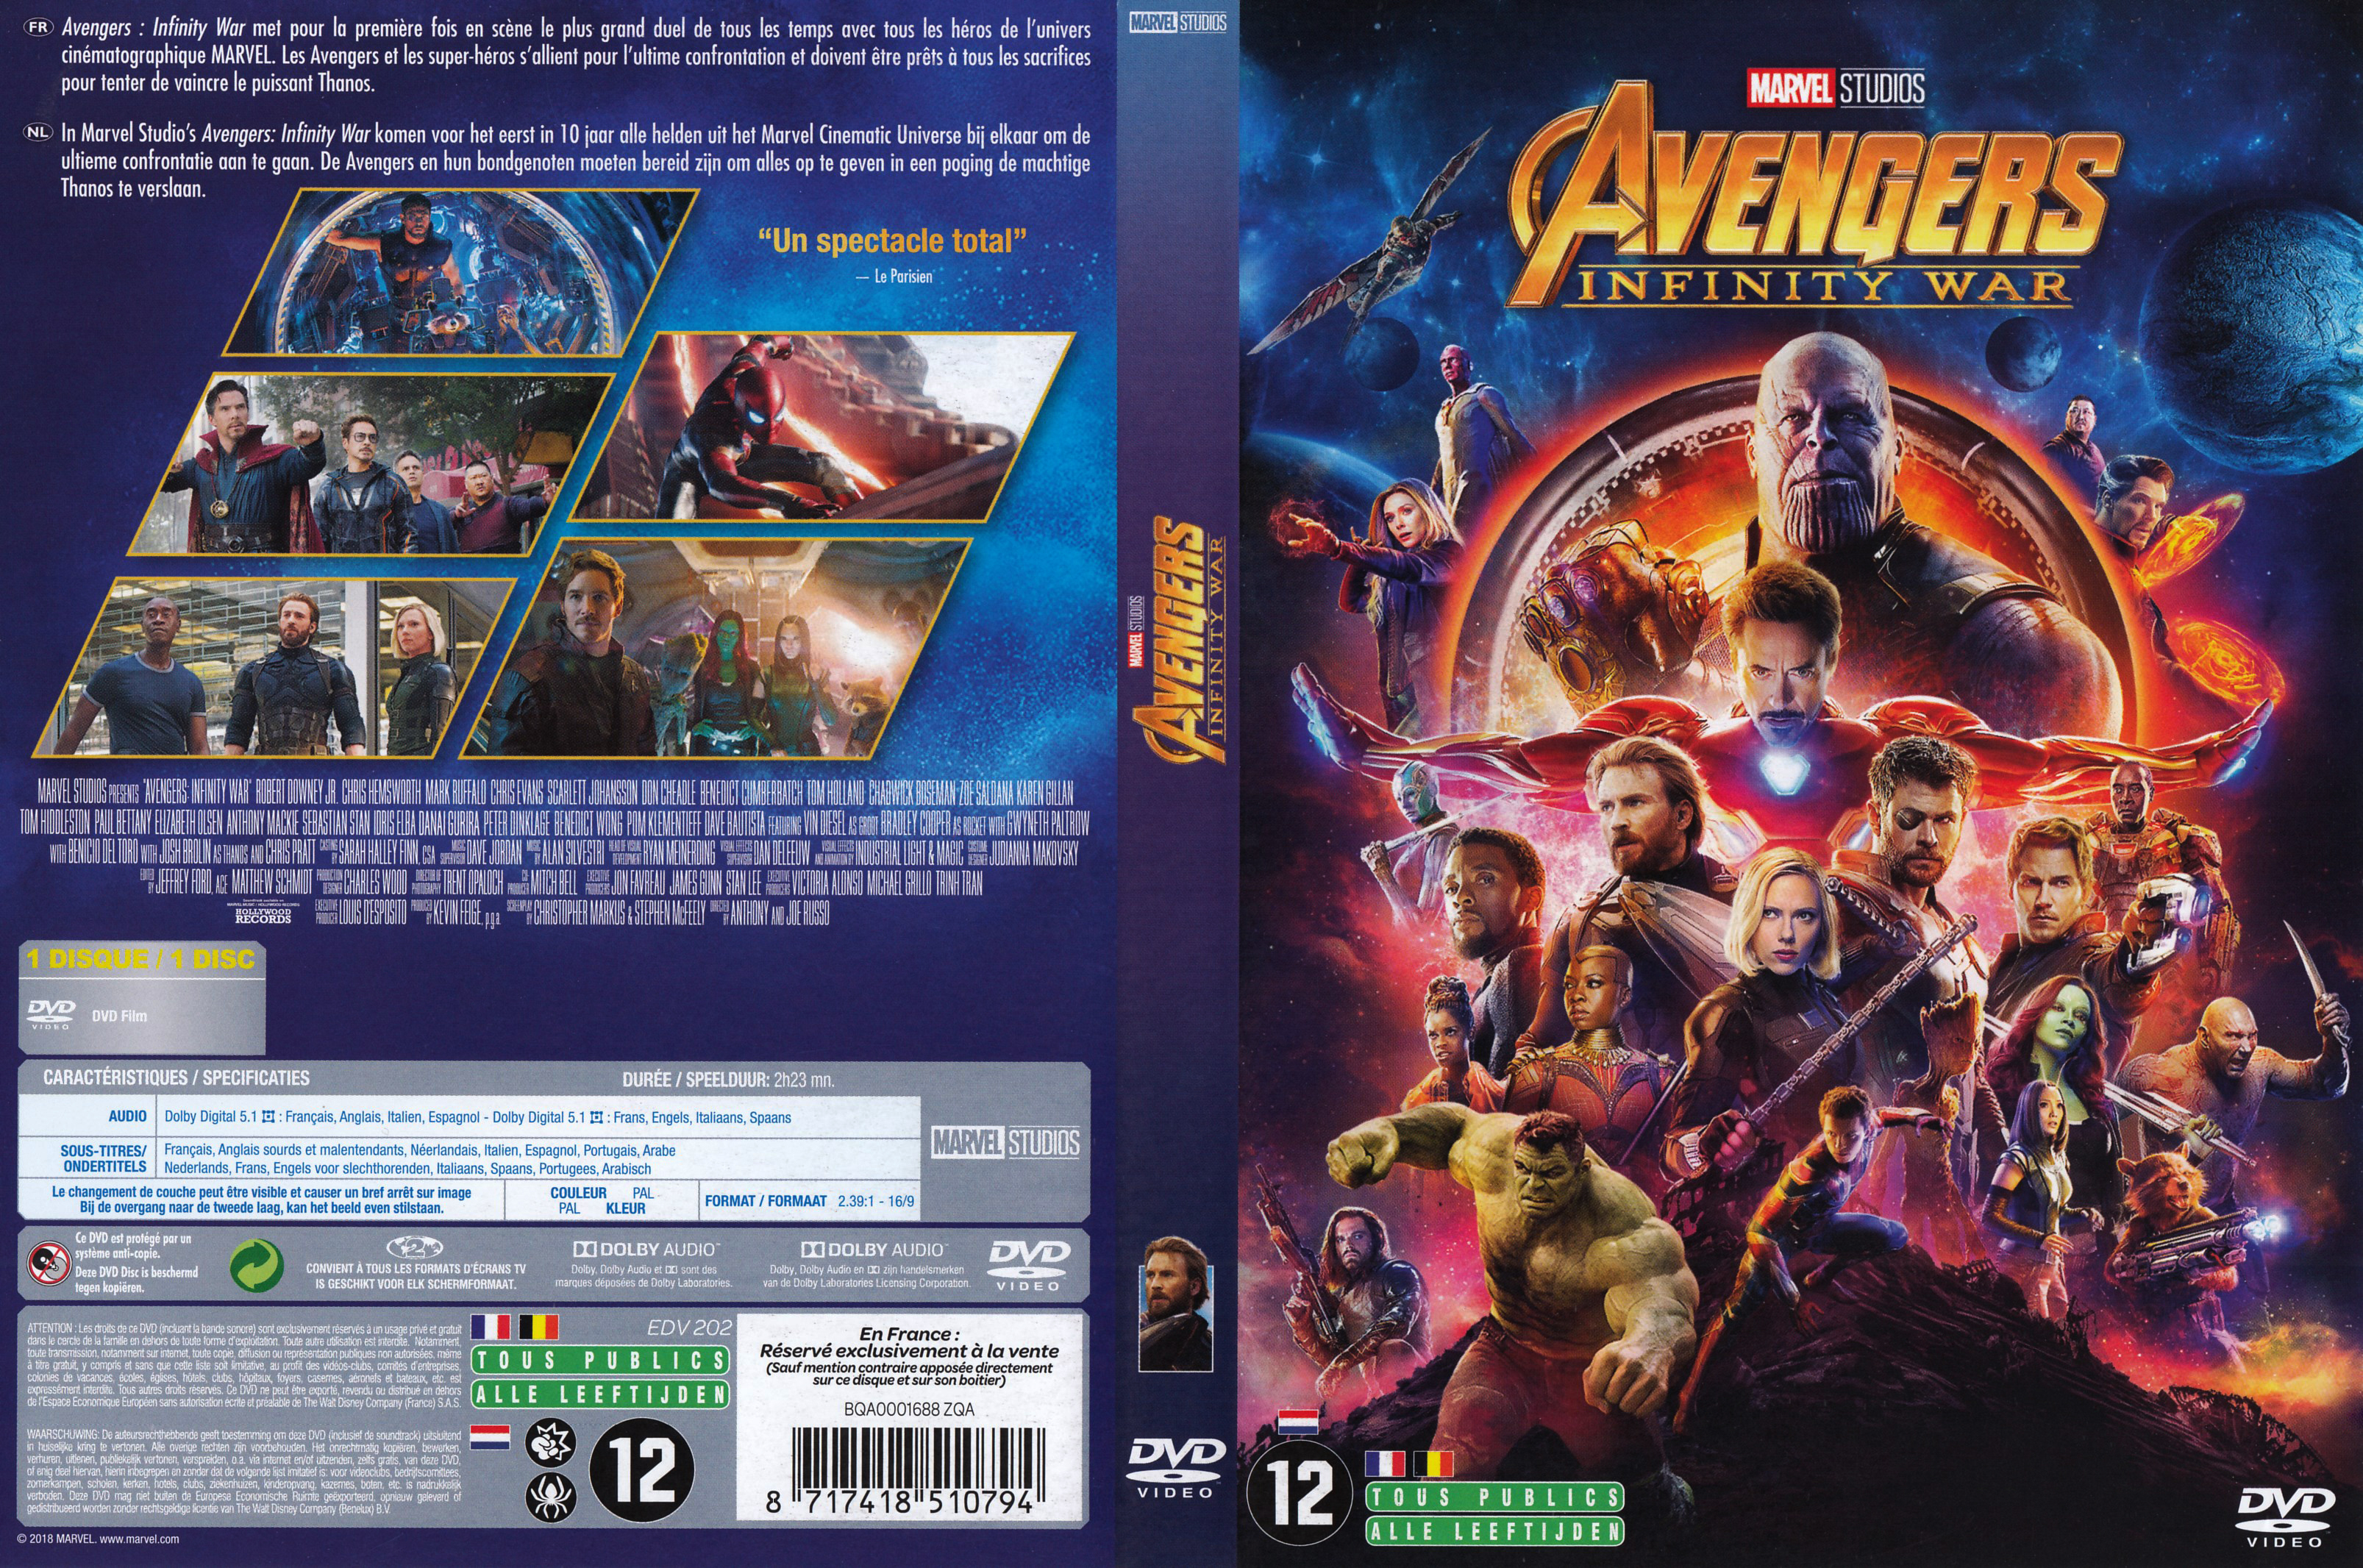 Jaquette DVD Avengers: Infinity War